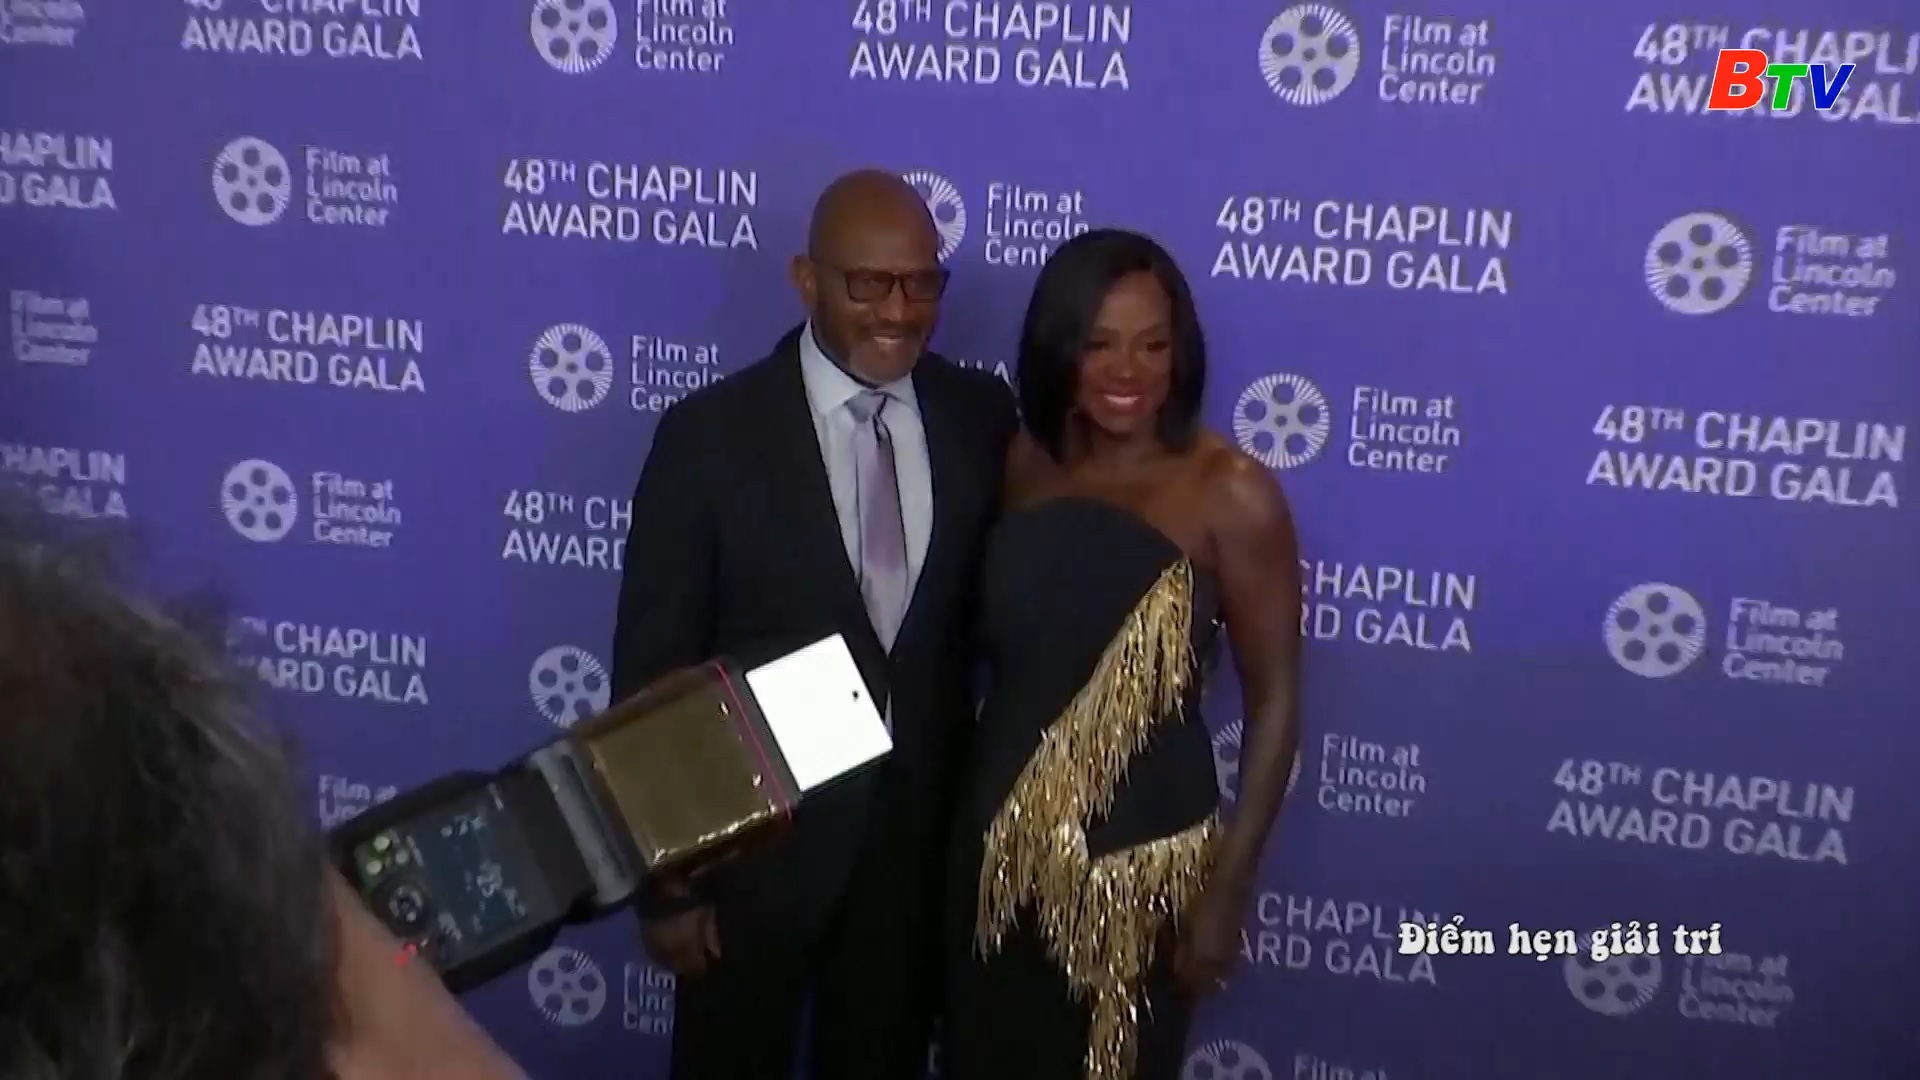 Diễn viên Viola Davis được trao giải thưởng Chaplin lần thứ 48